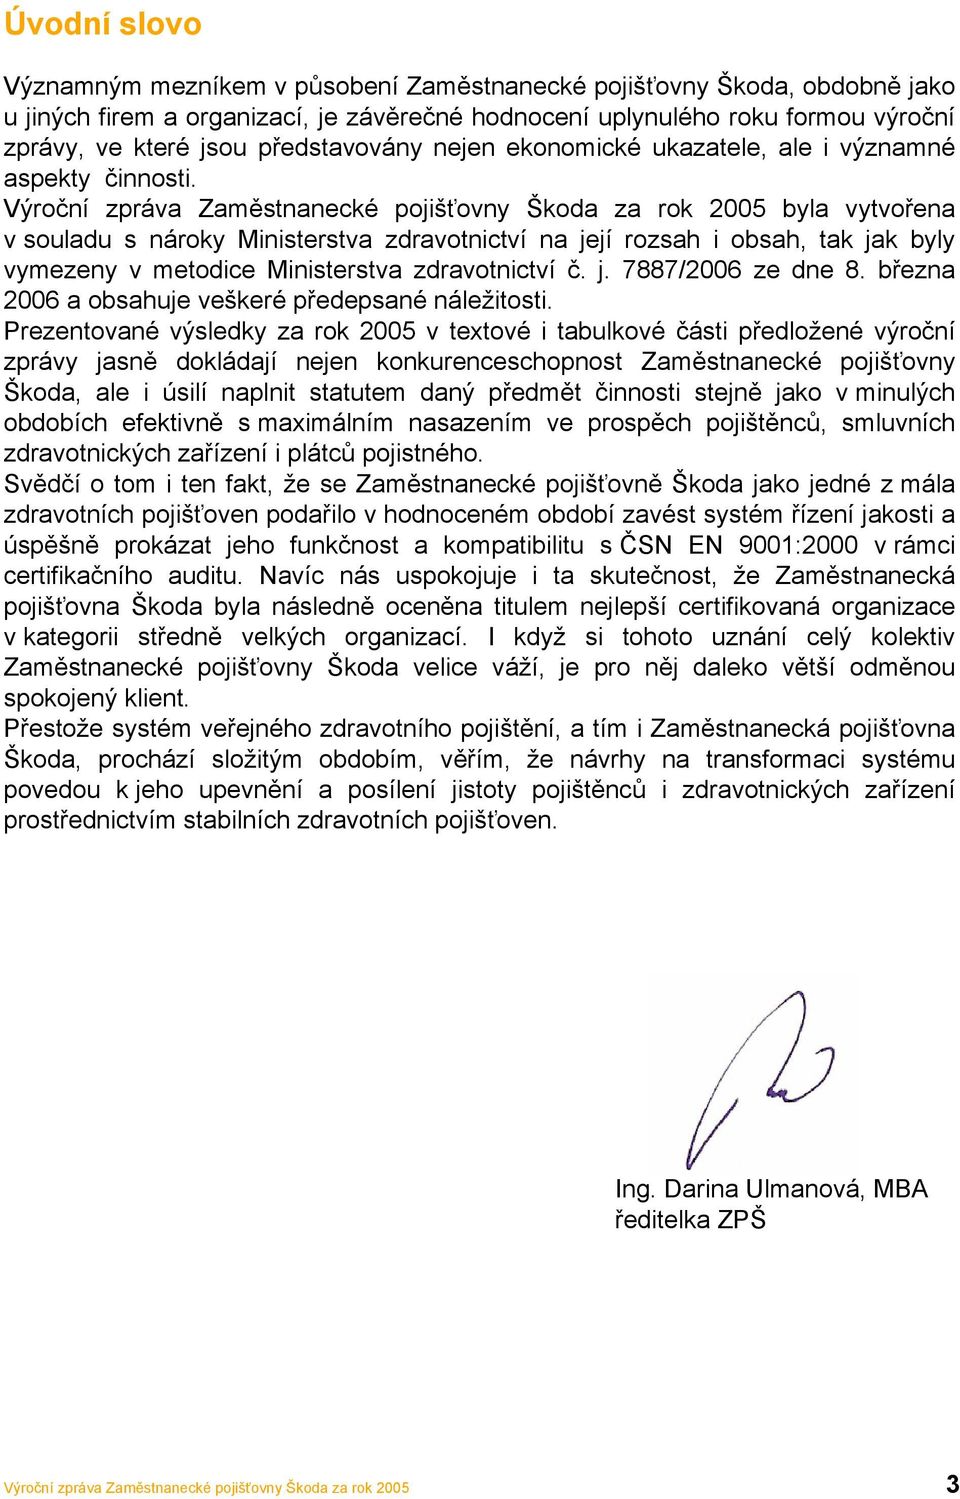 Výroční zpráva Zaměstnanecké pojišťovny Škoda za rok 2005 byla vytvořena v souladu s nároky Ministerstva zdravotnictví na její rozsah i obsah, tak jak byly vymezeny v metodice Ministerstva